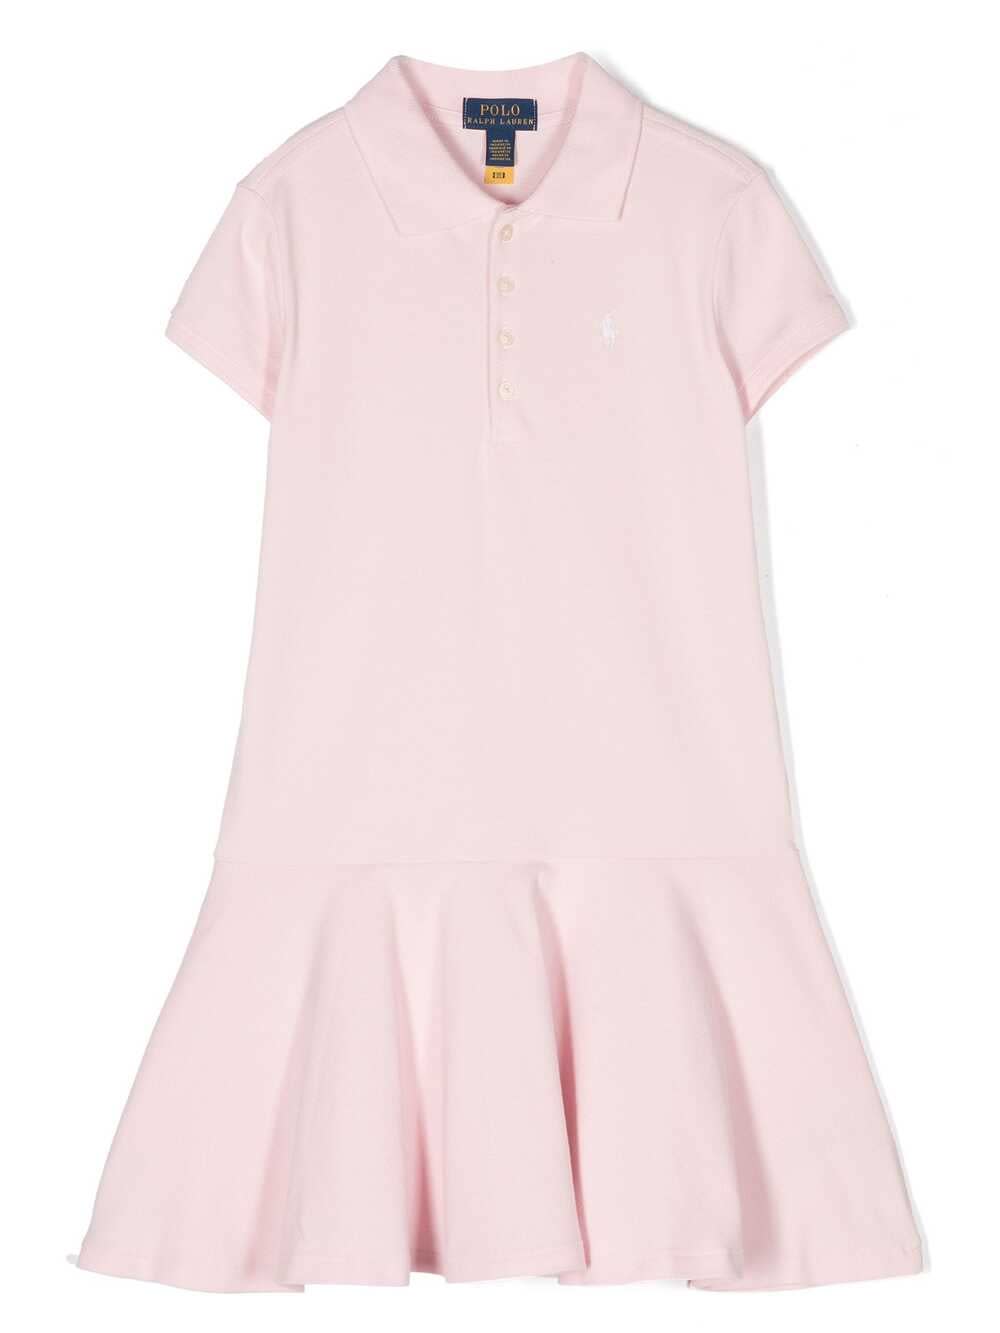 Ralph Lauren Pink Polo Style Dress